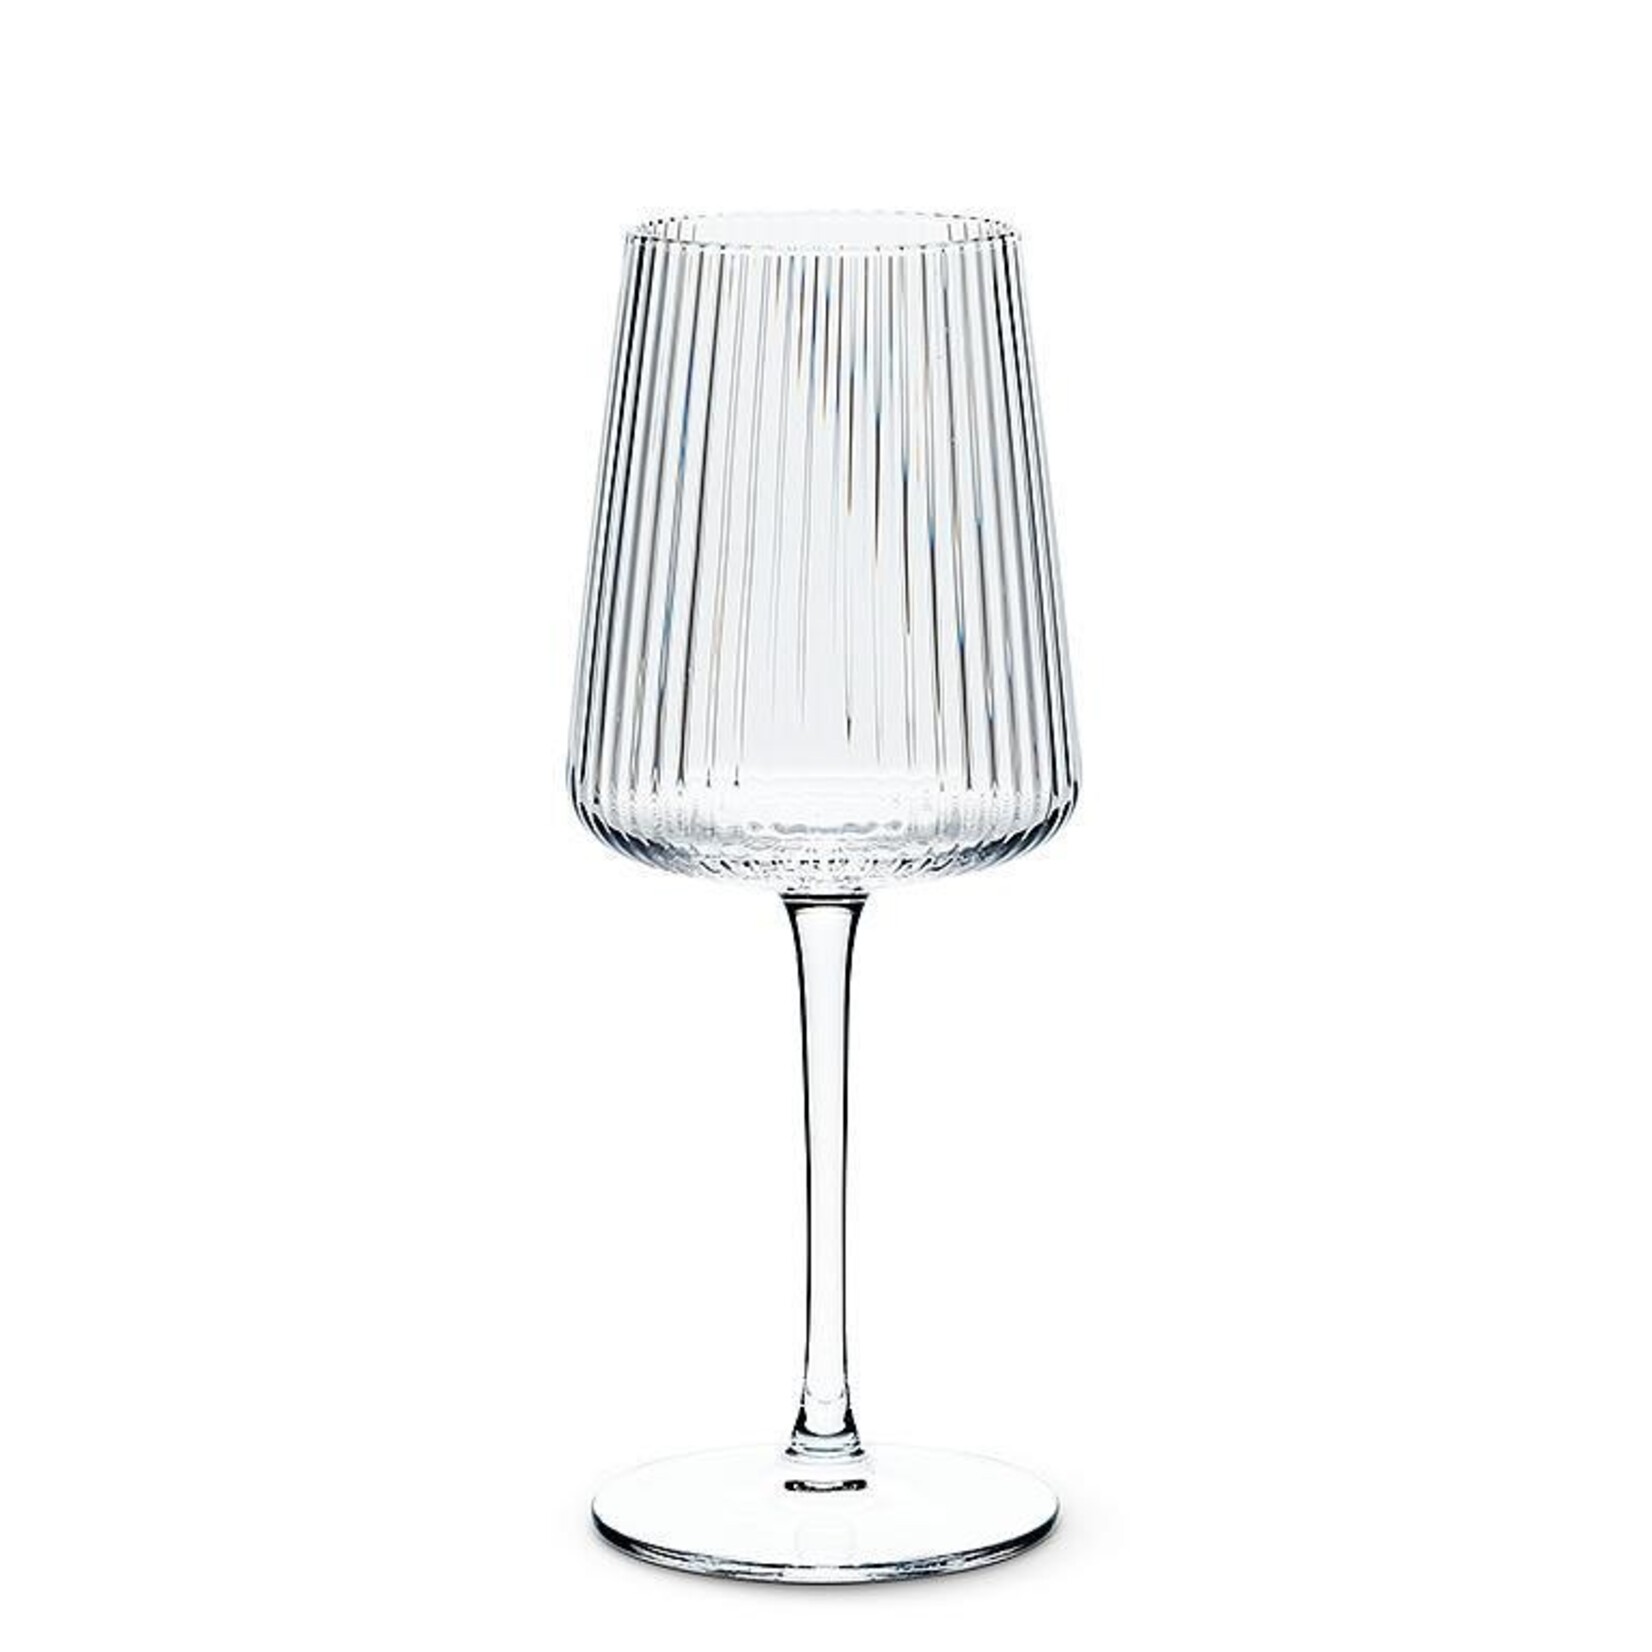 Abbott Tight Optic Wine Glass - 12 oz